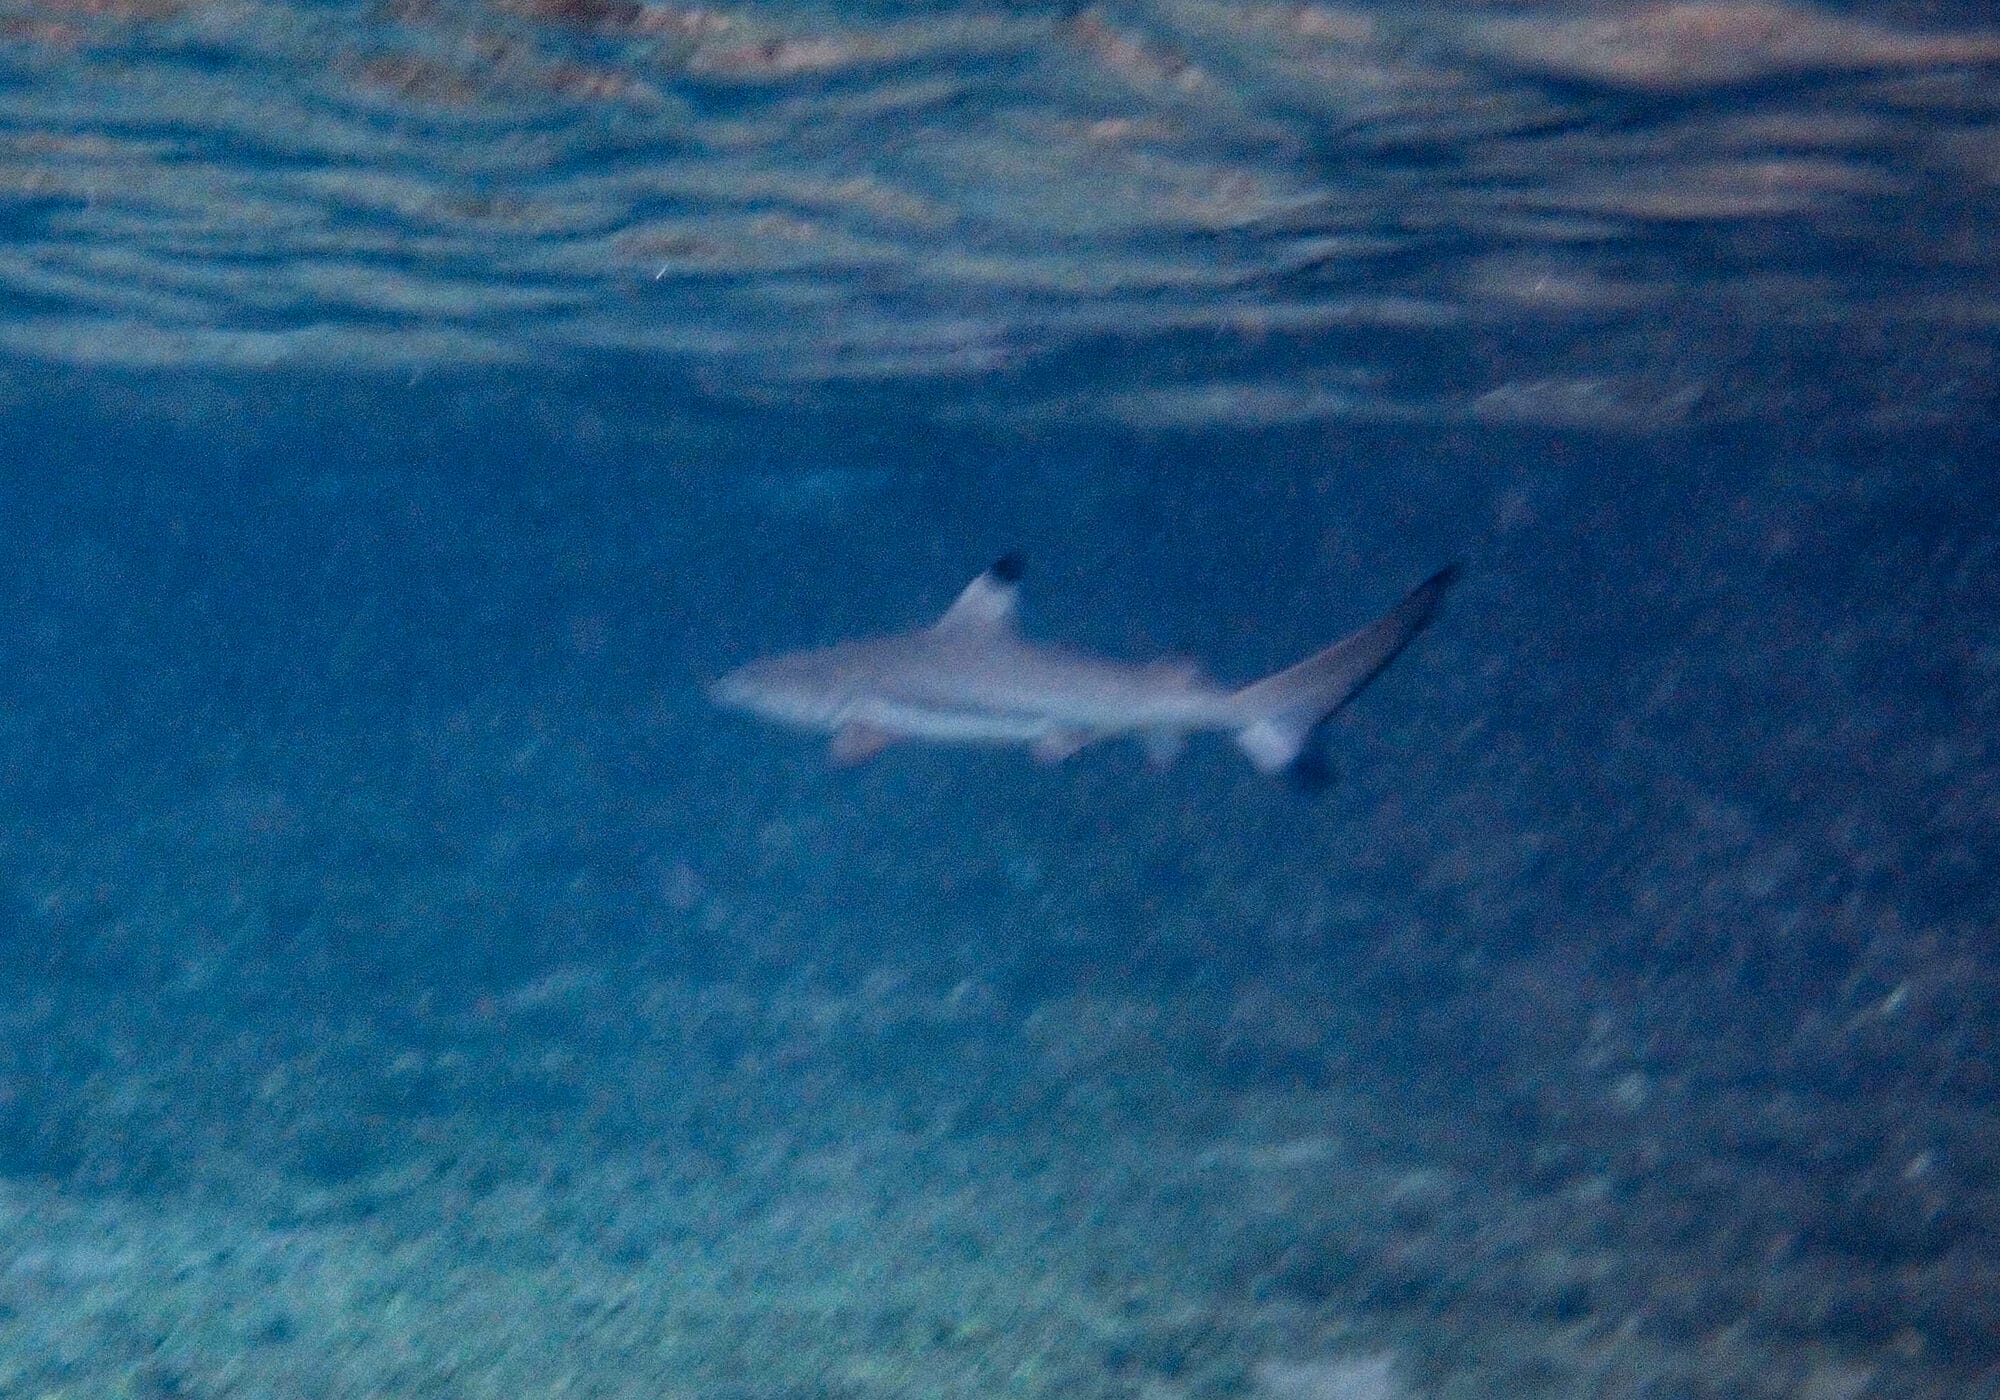 Juvenile Blacktip Reef Shark cruising in Maya Bay